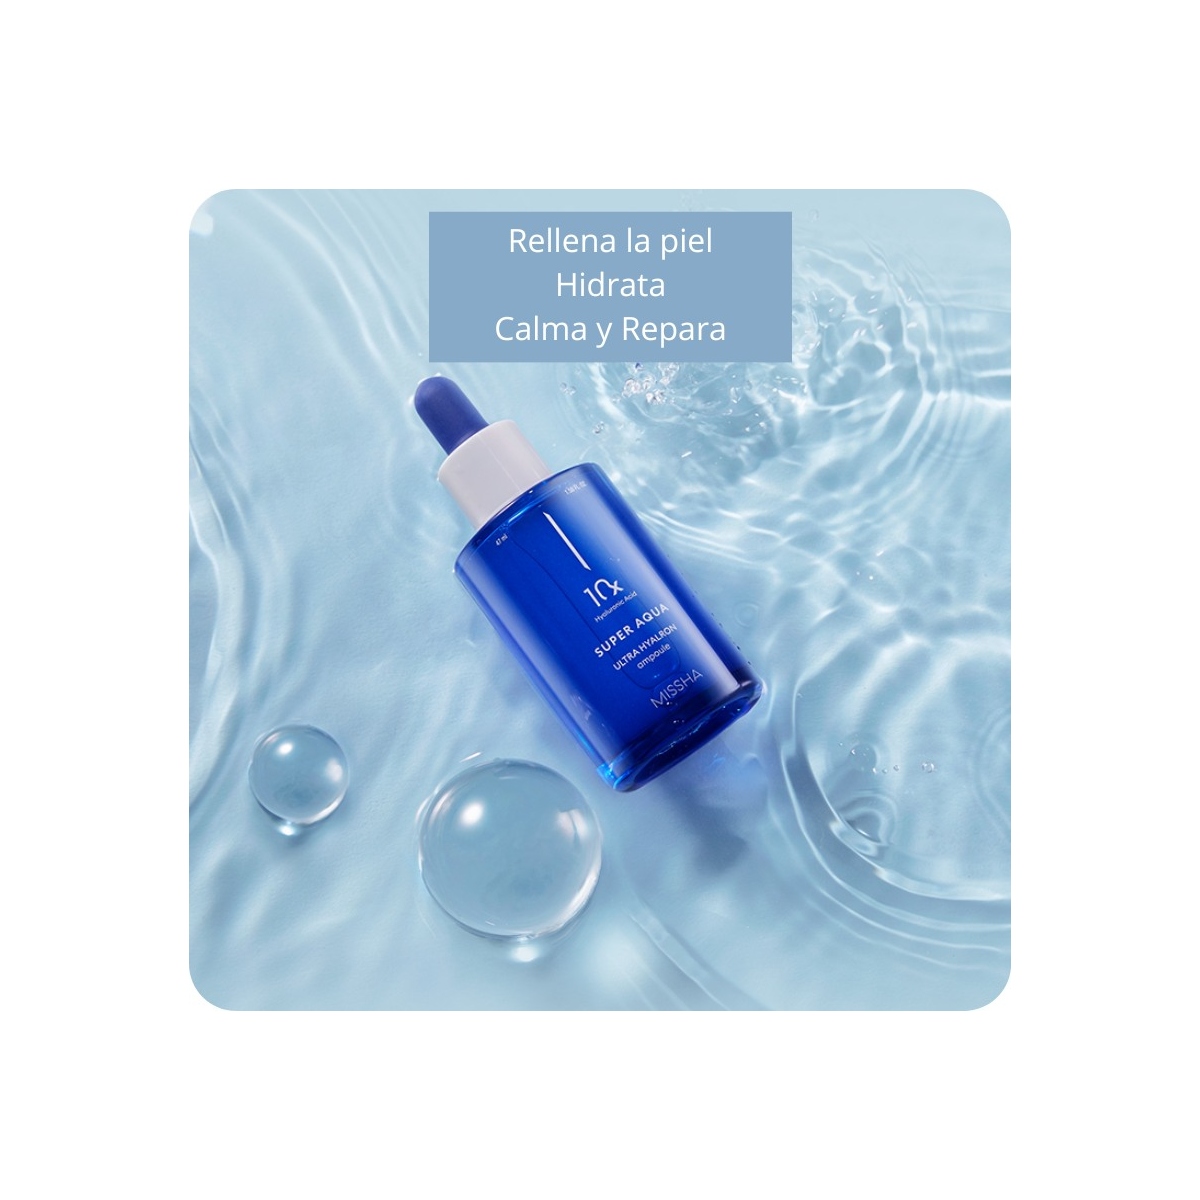 Emulsiones y Cremas al mejor precio: Missha Super Aqua Ultra Hyalron Ampoule & Cream Duo Set de Missha en Skin Thinks - Piel Sensible